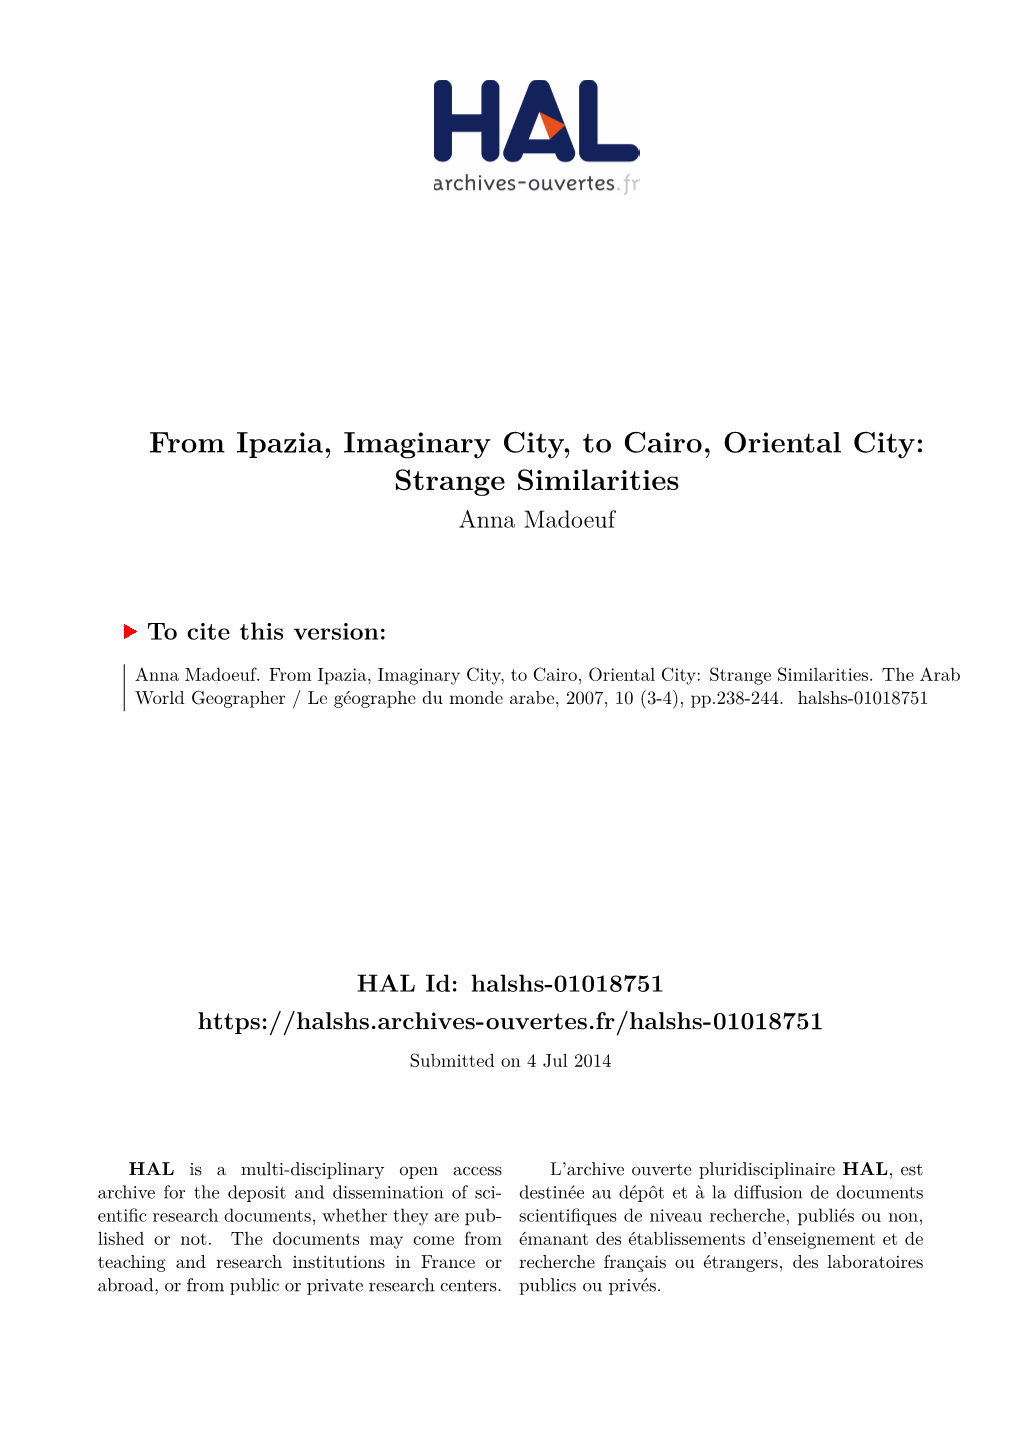 From Ipazia, Imaginary City, to Cairo, Oriental City: Strange Similarities Anna Madoeuf